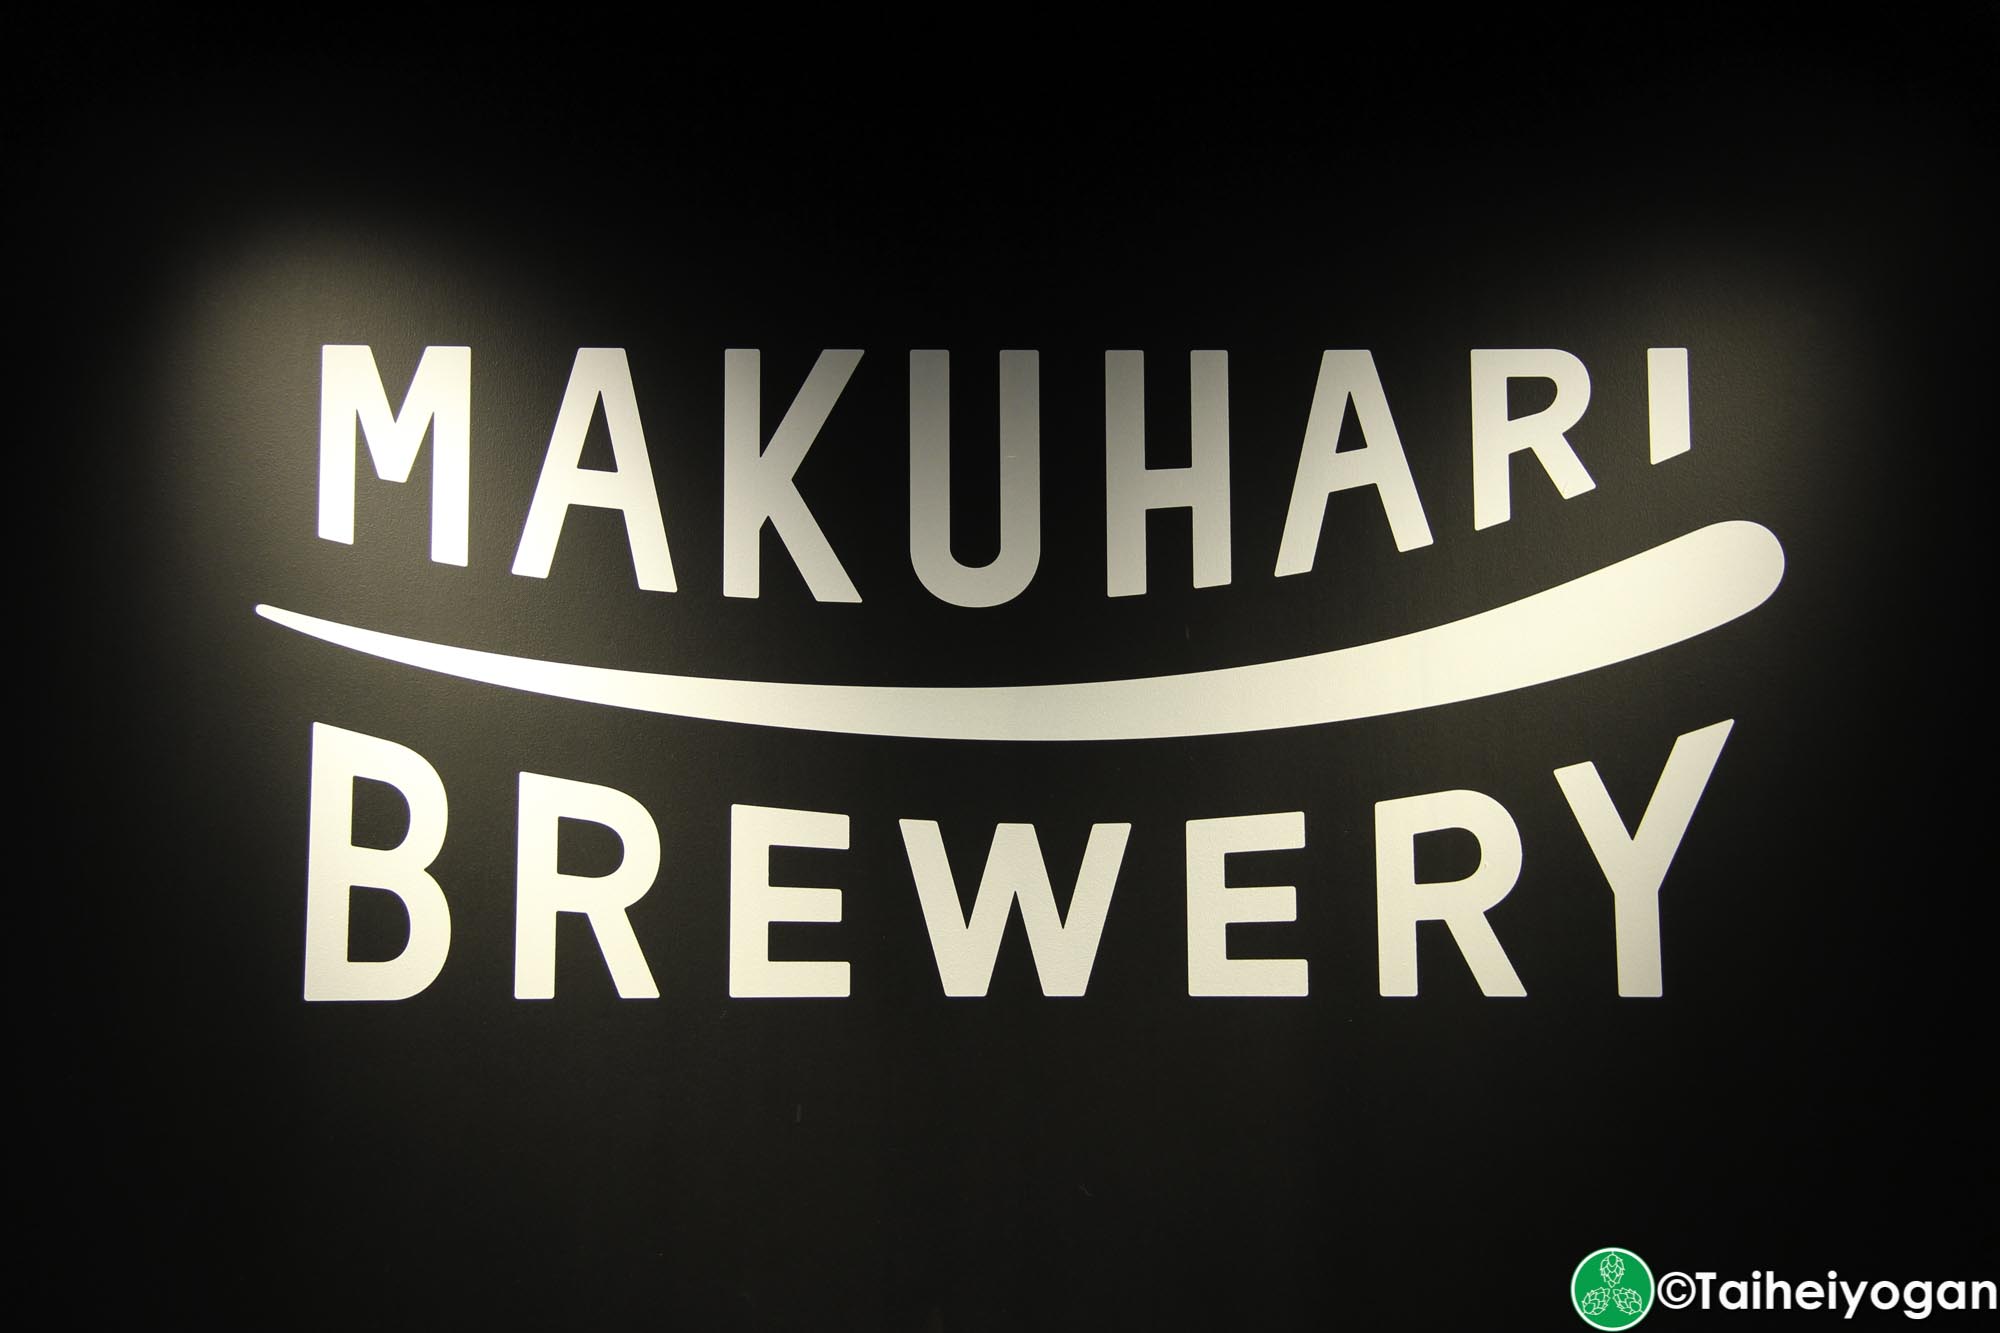 Makuhari Brewery